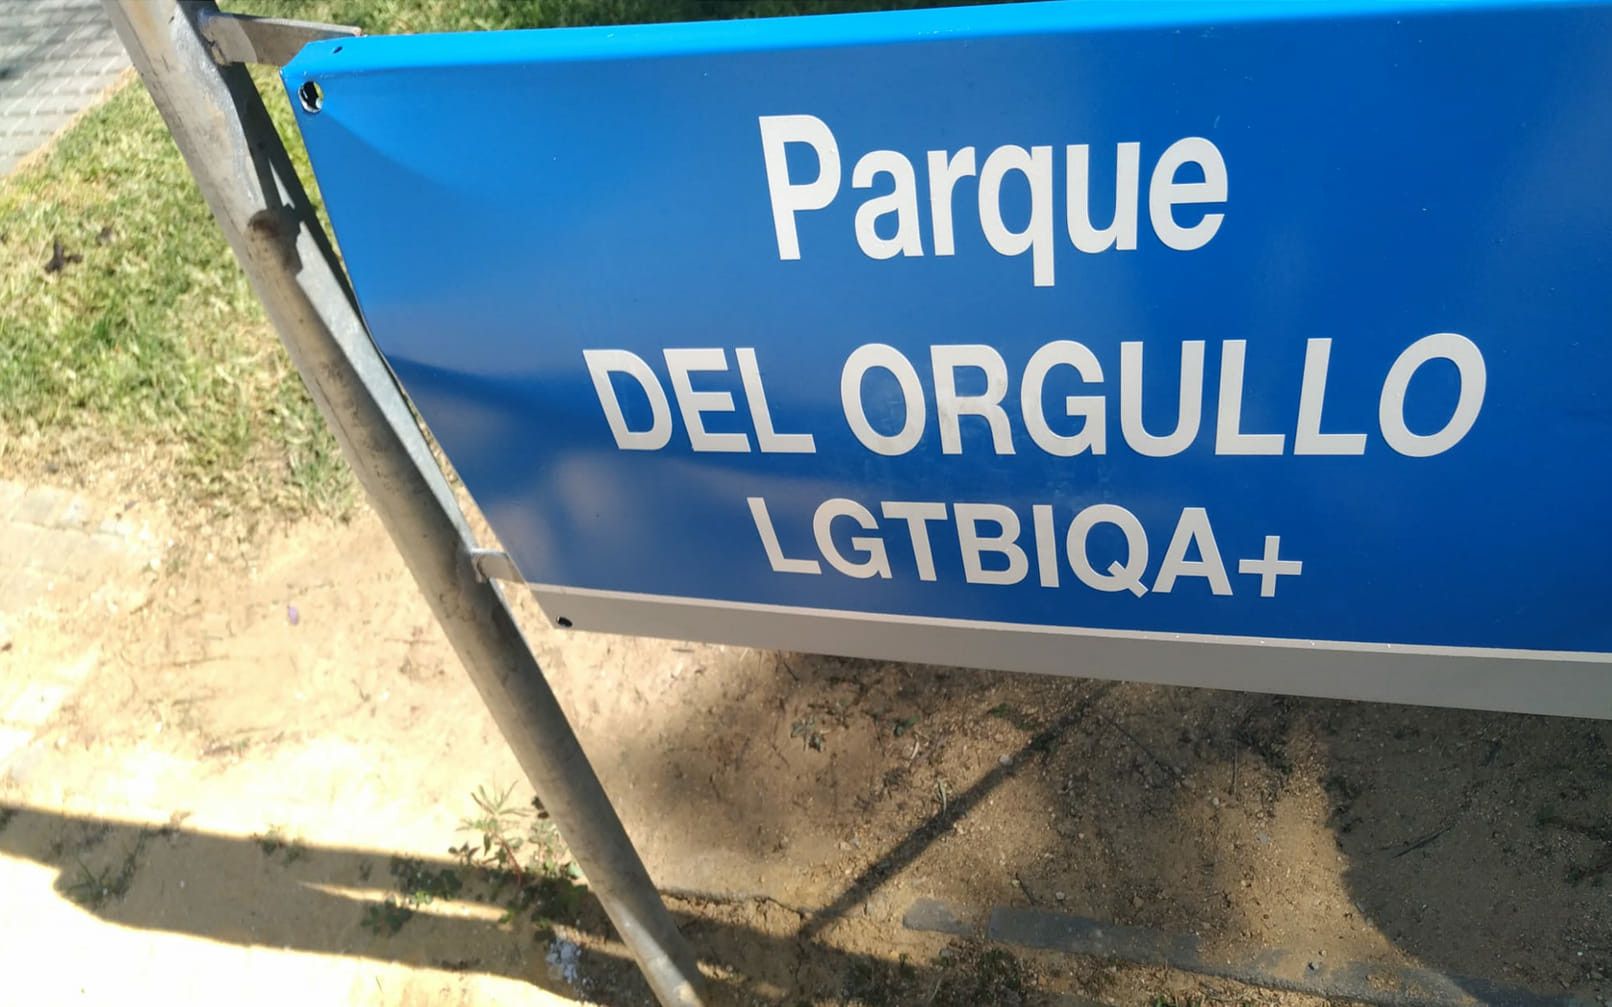 Los destrozos sobre la placa del parque del Orgullo en Jerez.